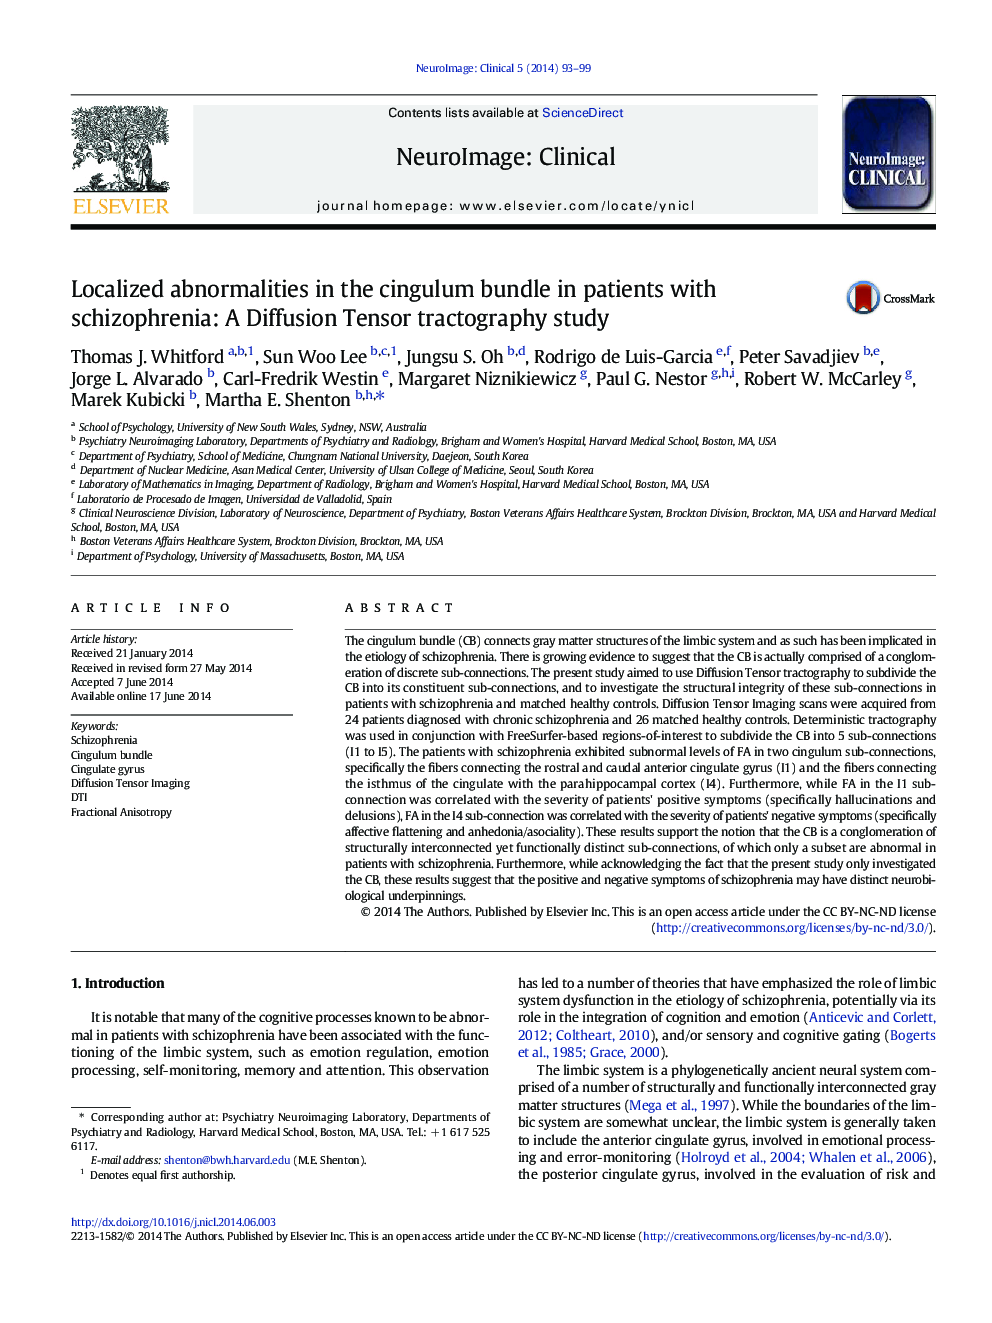 ناهنجاری های موضعی در بسته بندی سینگولوم در بیماران مبتلا به اسکیزوفرنی: یک مطالعه تنسور منتشر 